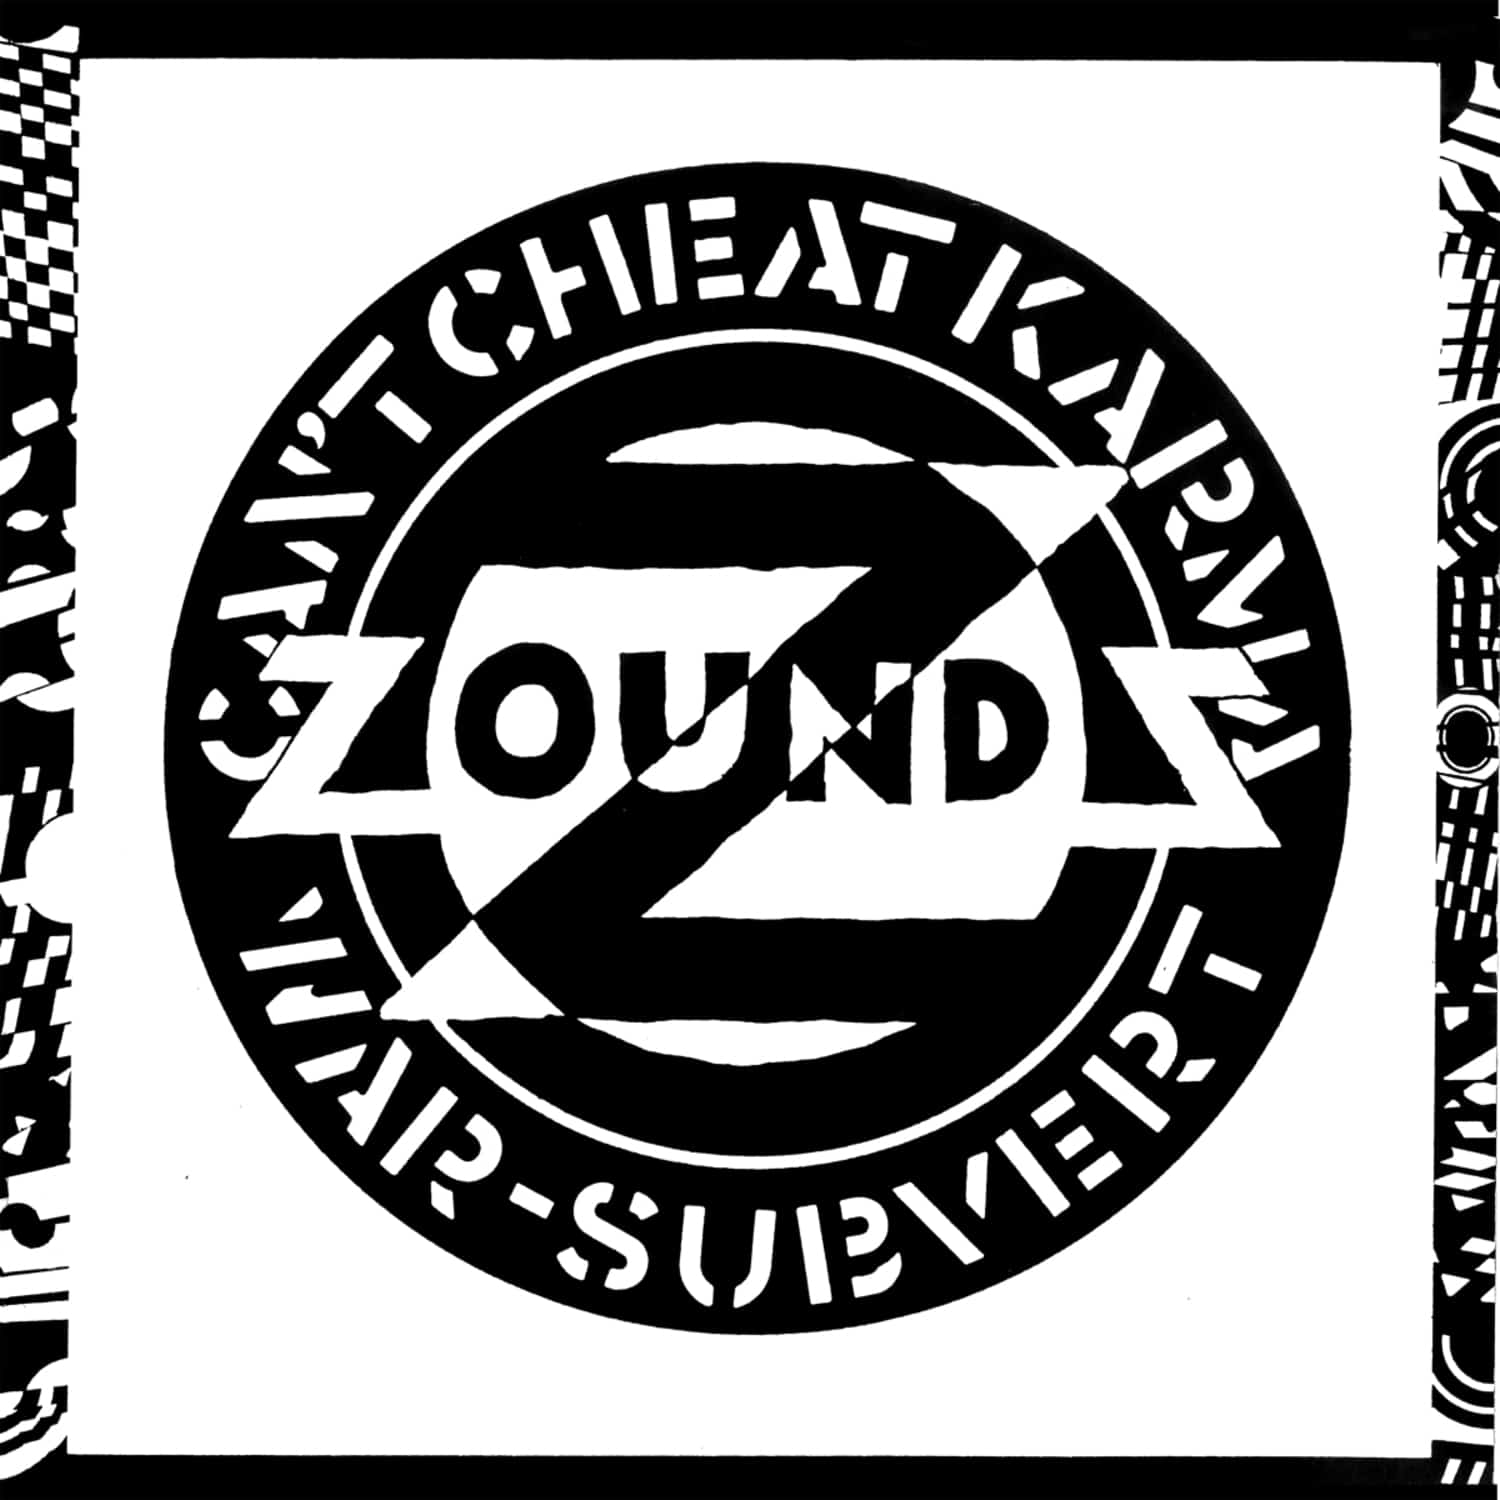 Zounds - CAN T CHEAT KARMA / WAR / SUBVERT